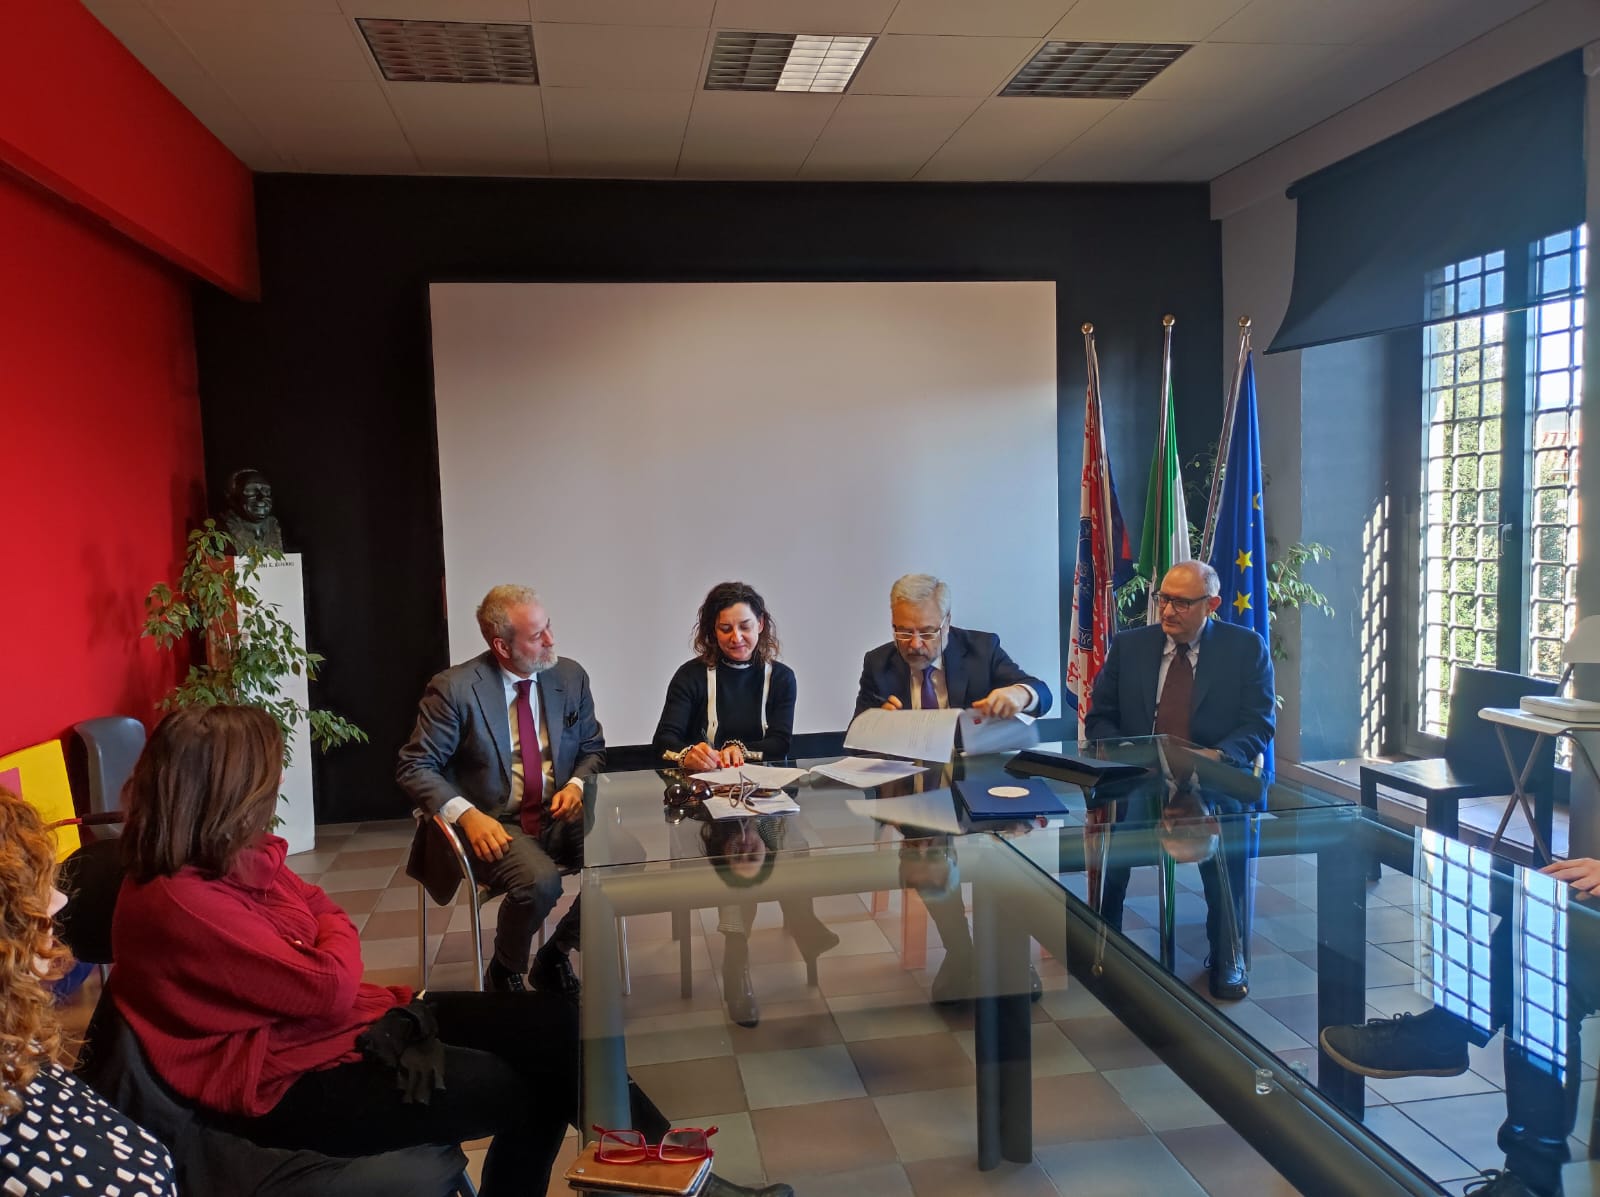 Accessibilità, firmato accordo tra Università di Firenze e Regione Toscana